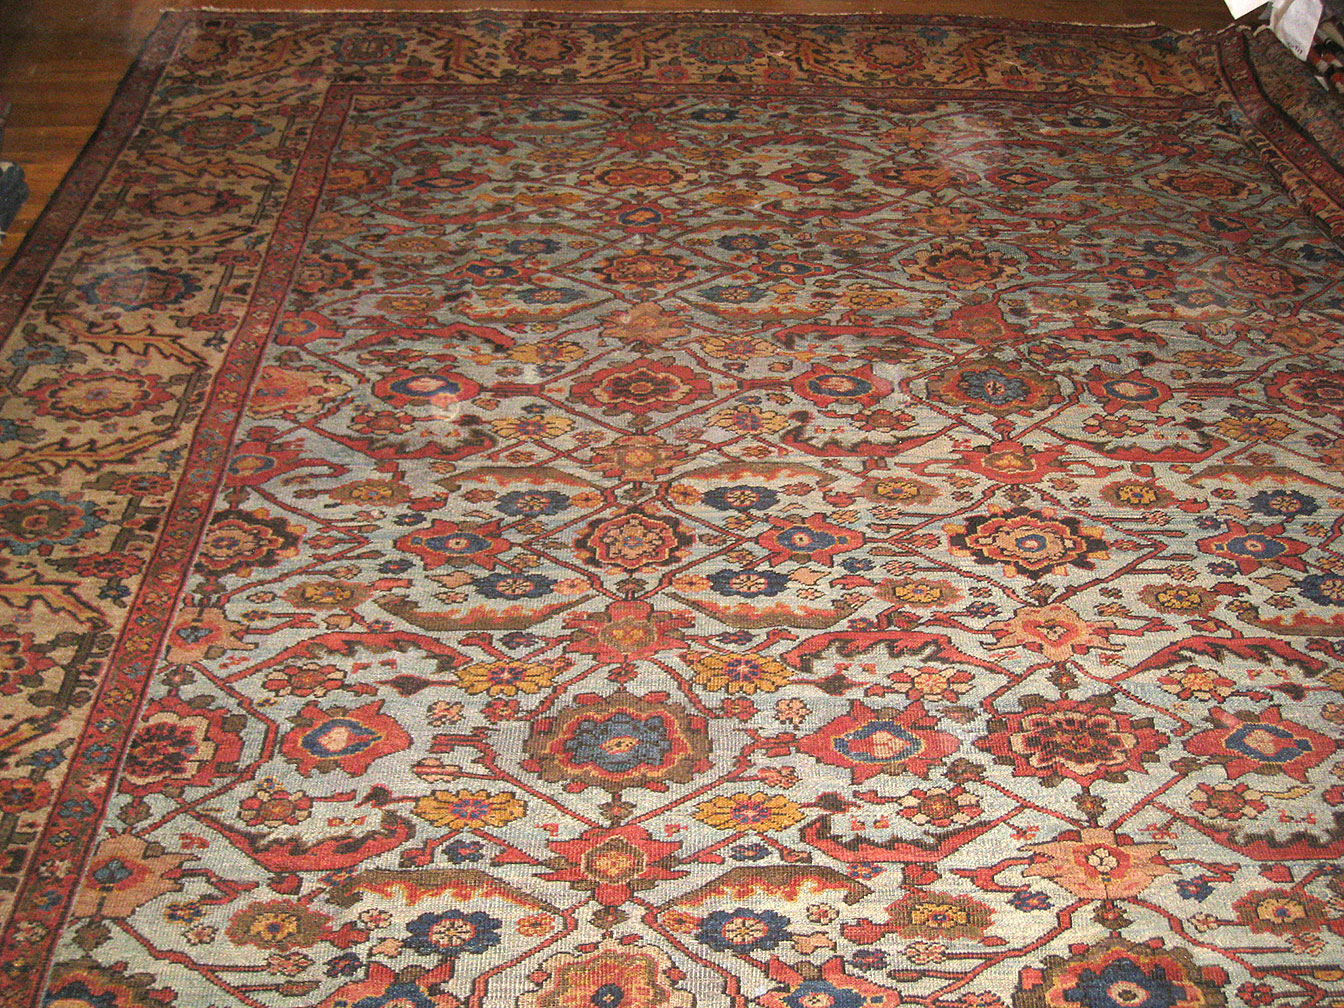 Antique sultan abad Carpet - # 52121